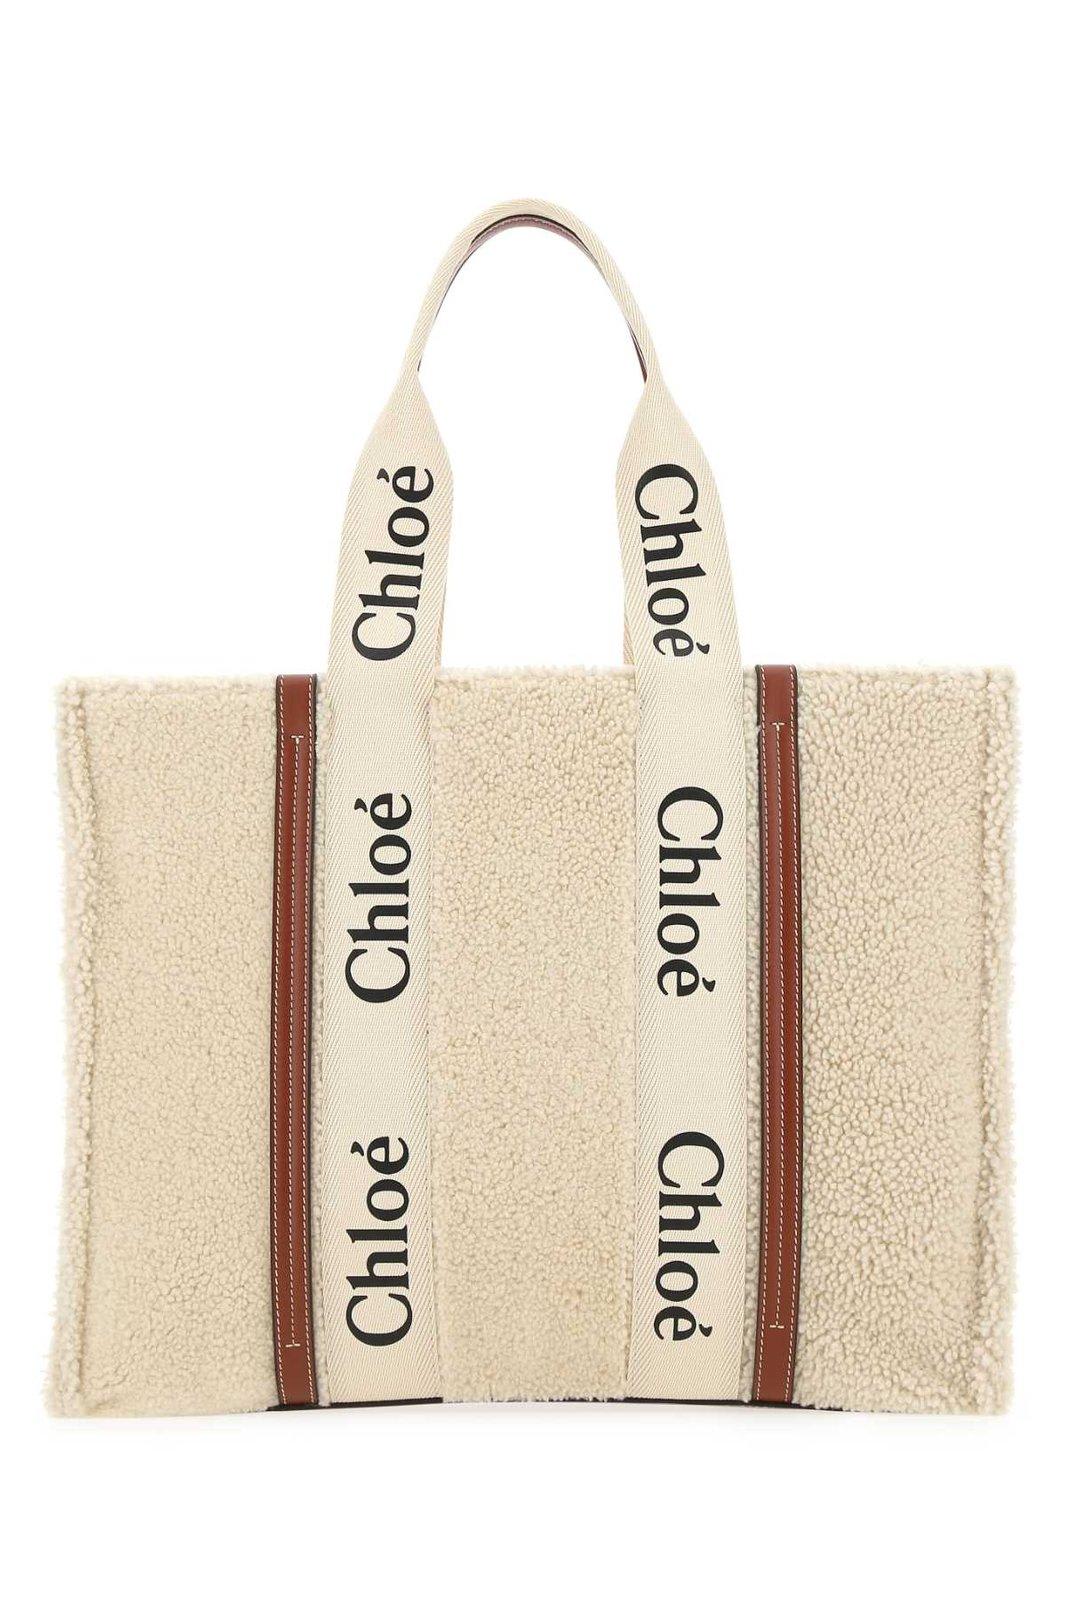 Chloé Woody Shearlng Large Tote Bag